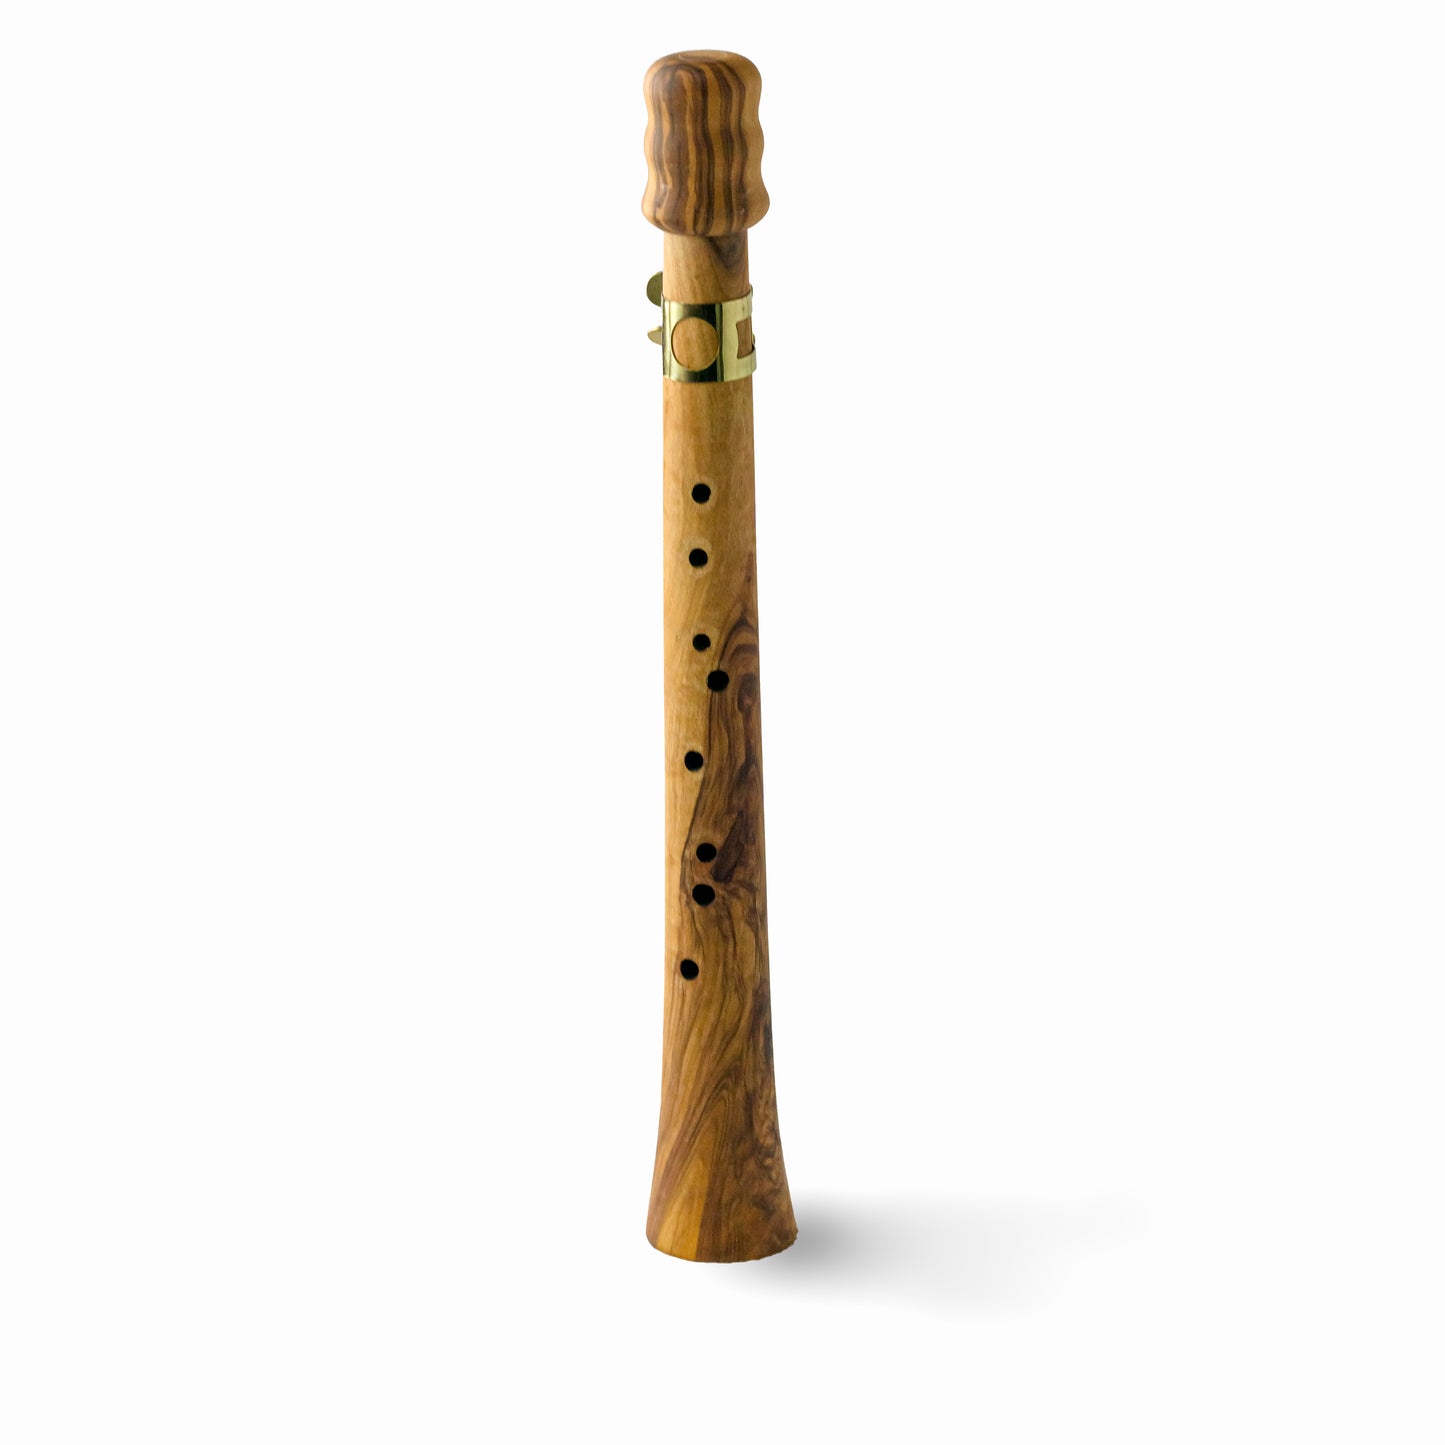 Wooden "Sax" in legno di ulivo